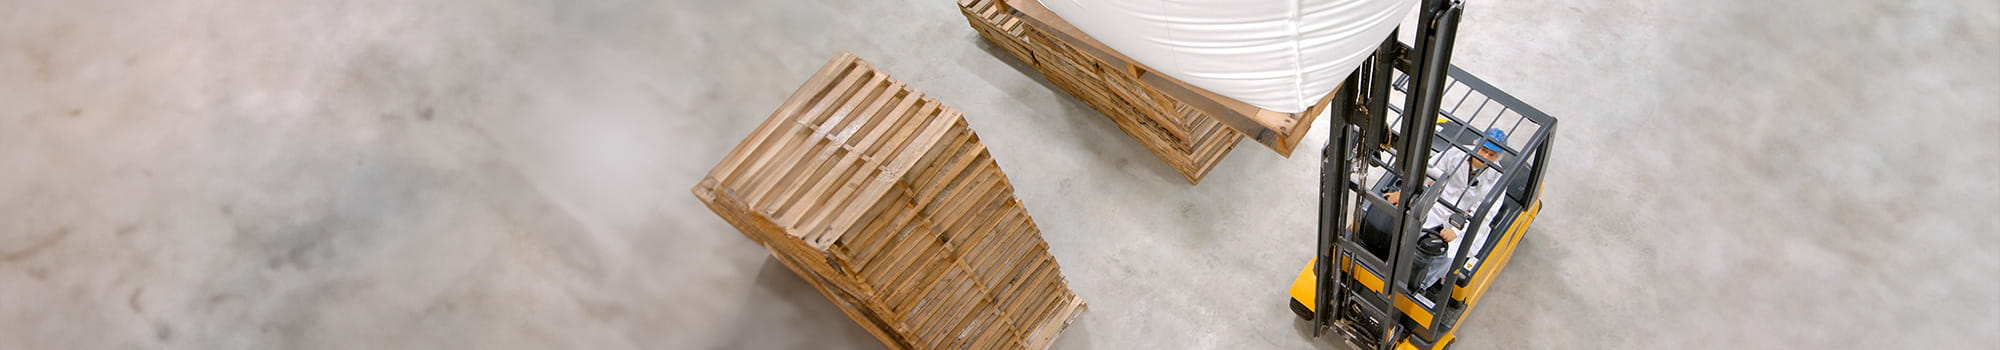 Gabelstabler transportiert einen großen Sack mit Materialen und daneben stehen Platten mit Holz